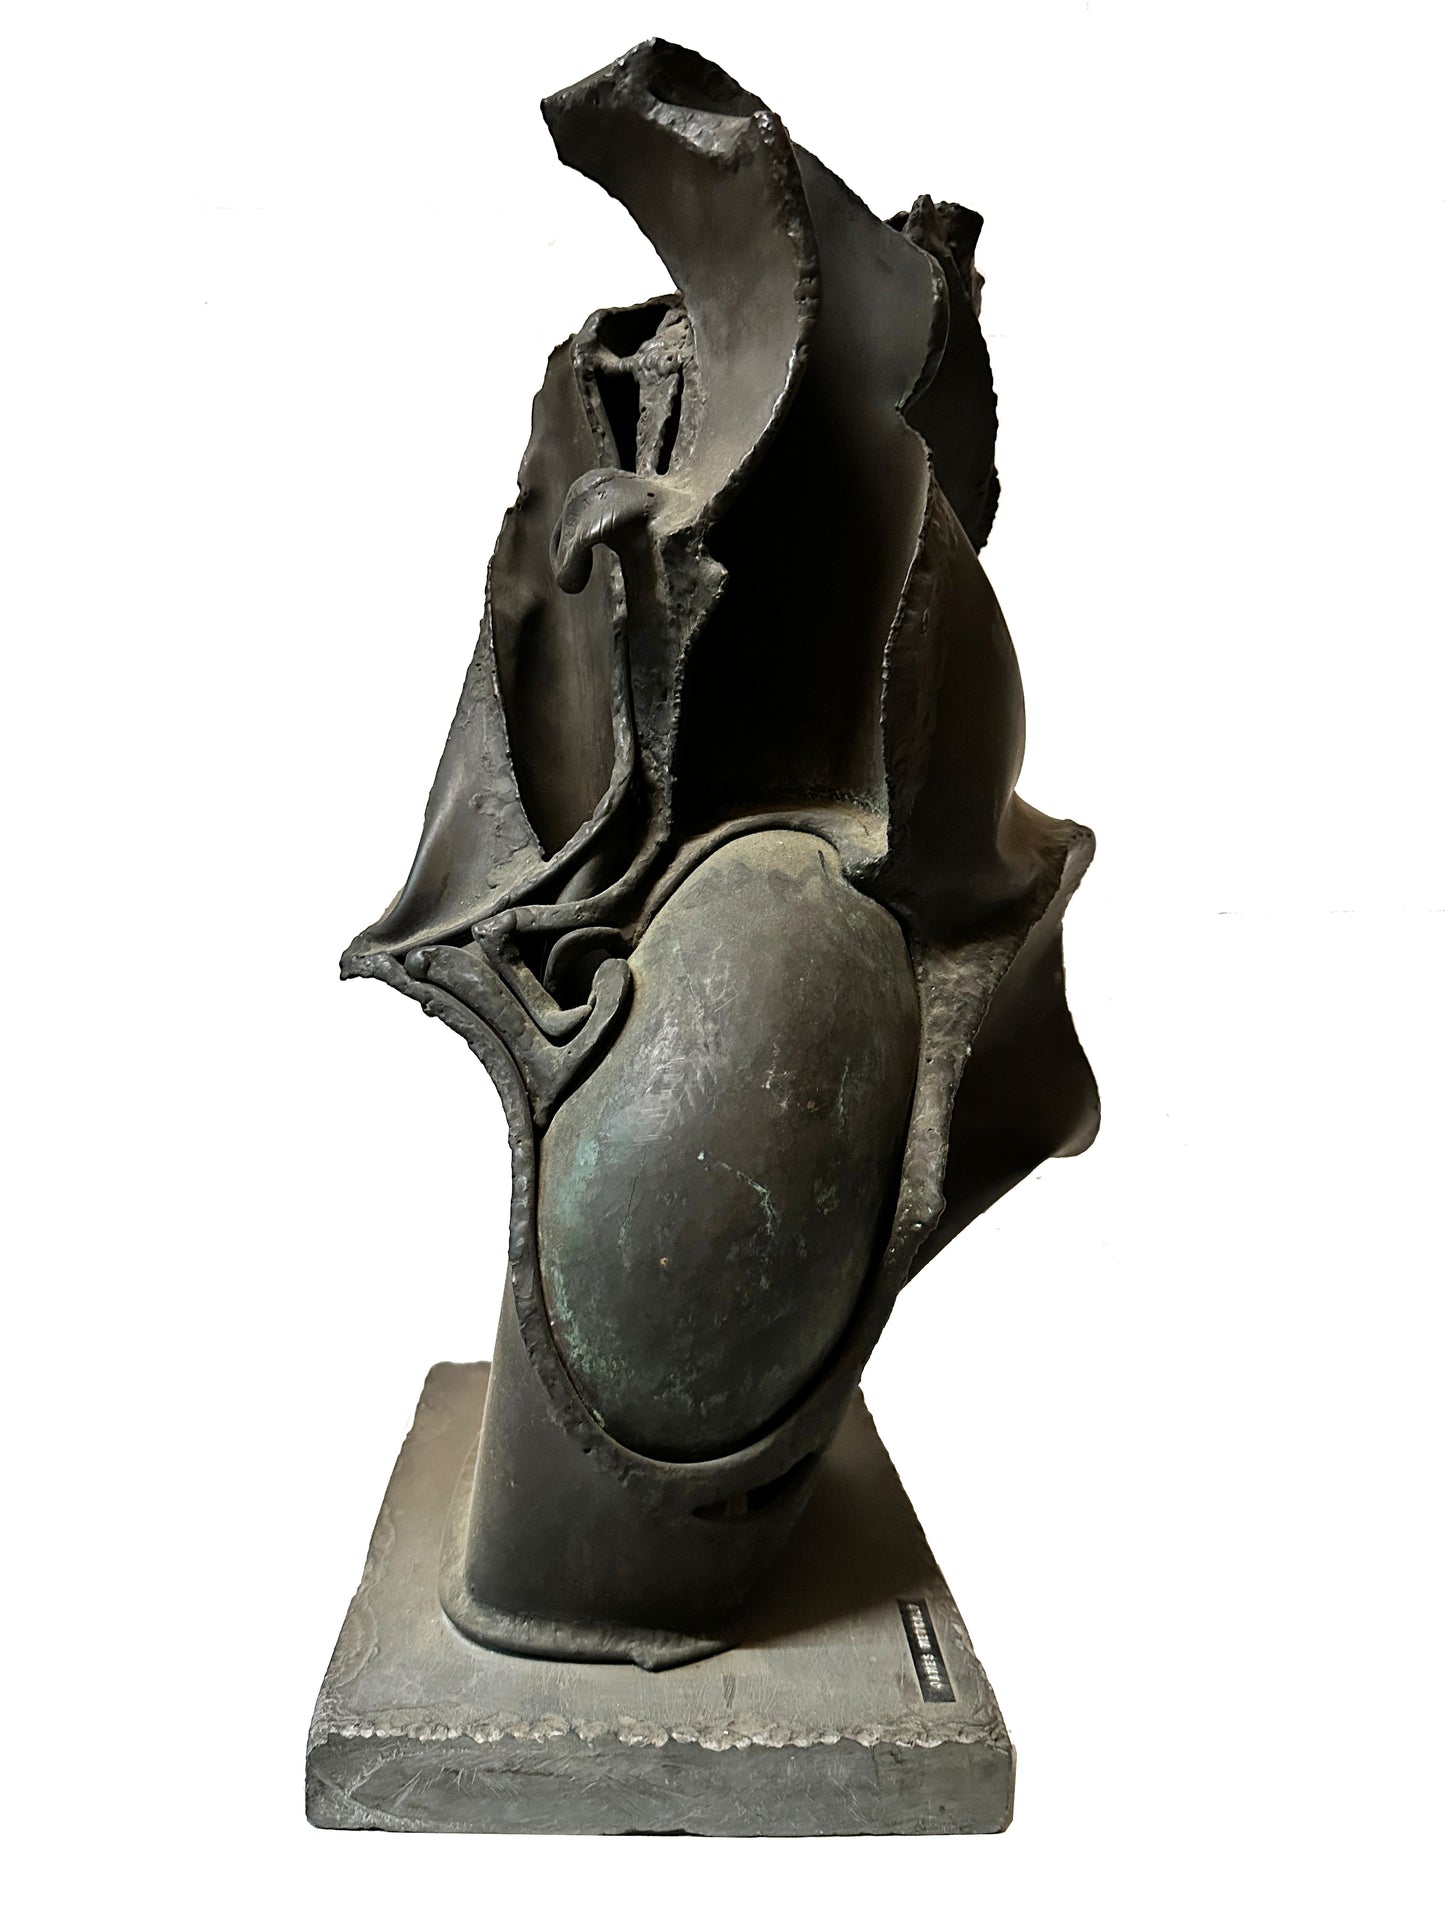 James Metcalf Modernist Abstract Metal Sculpture